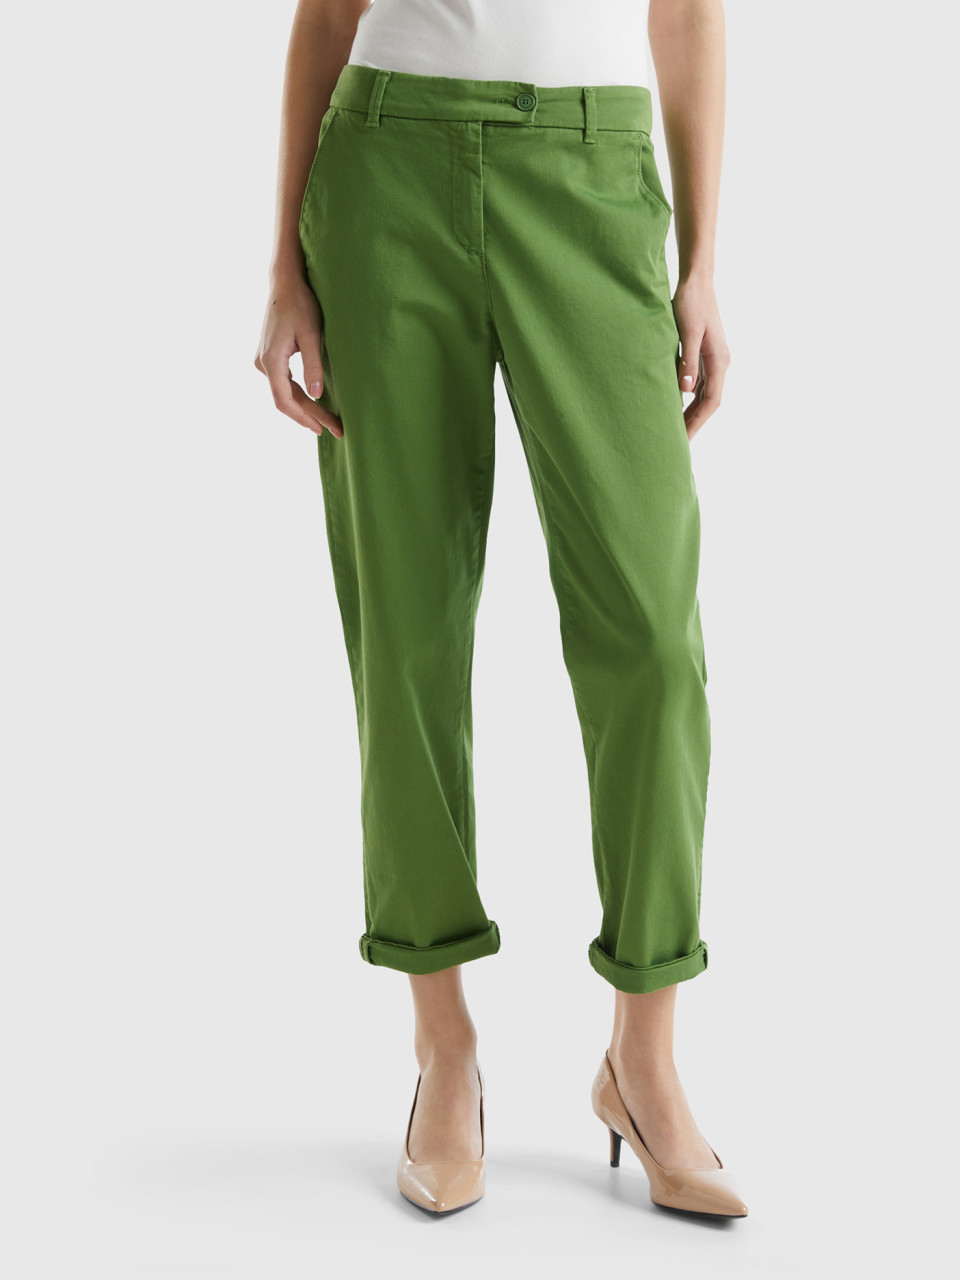 Benetton, Pantaloni Chino In Cotone Stretch, Verde Militare, Donna